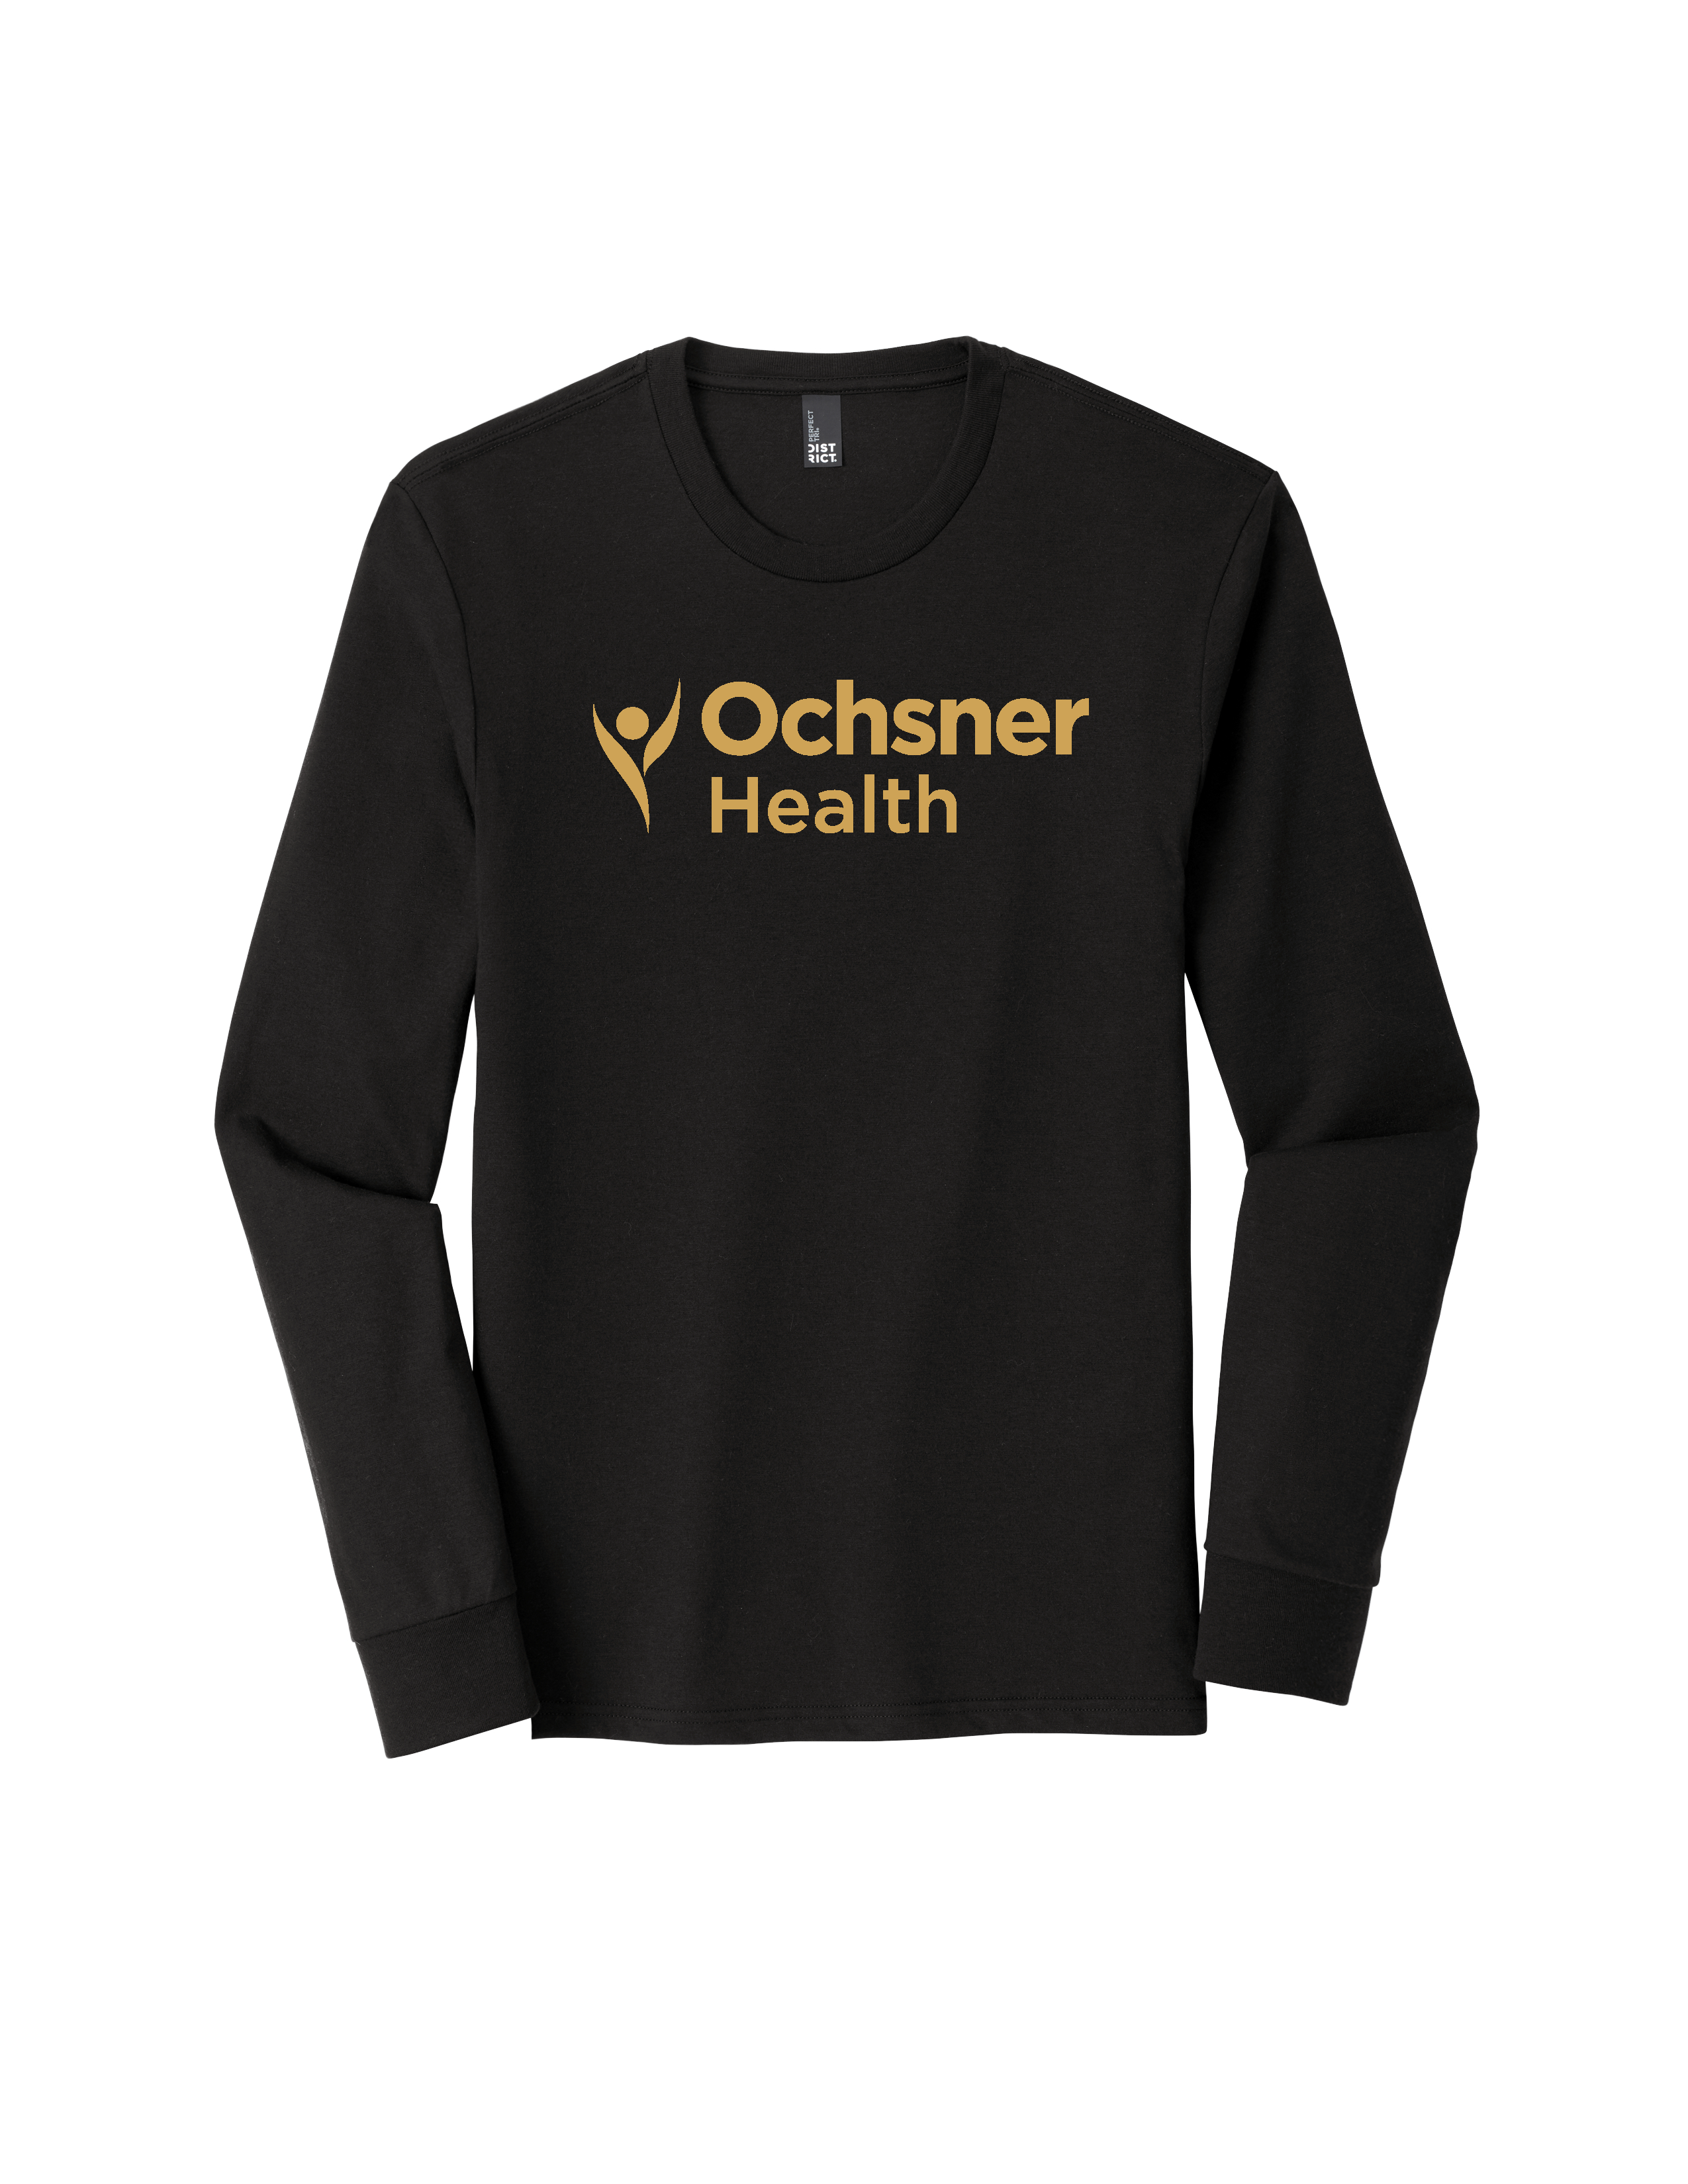 Ochsner Saints Long Sleeve Unisex T-Shirt, Black, large image number 2